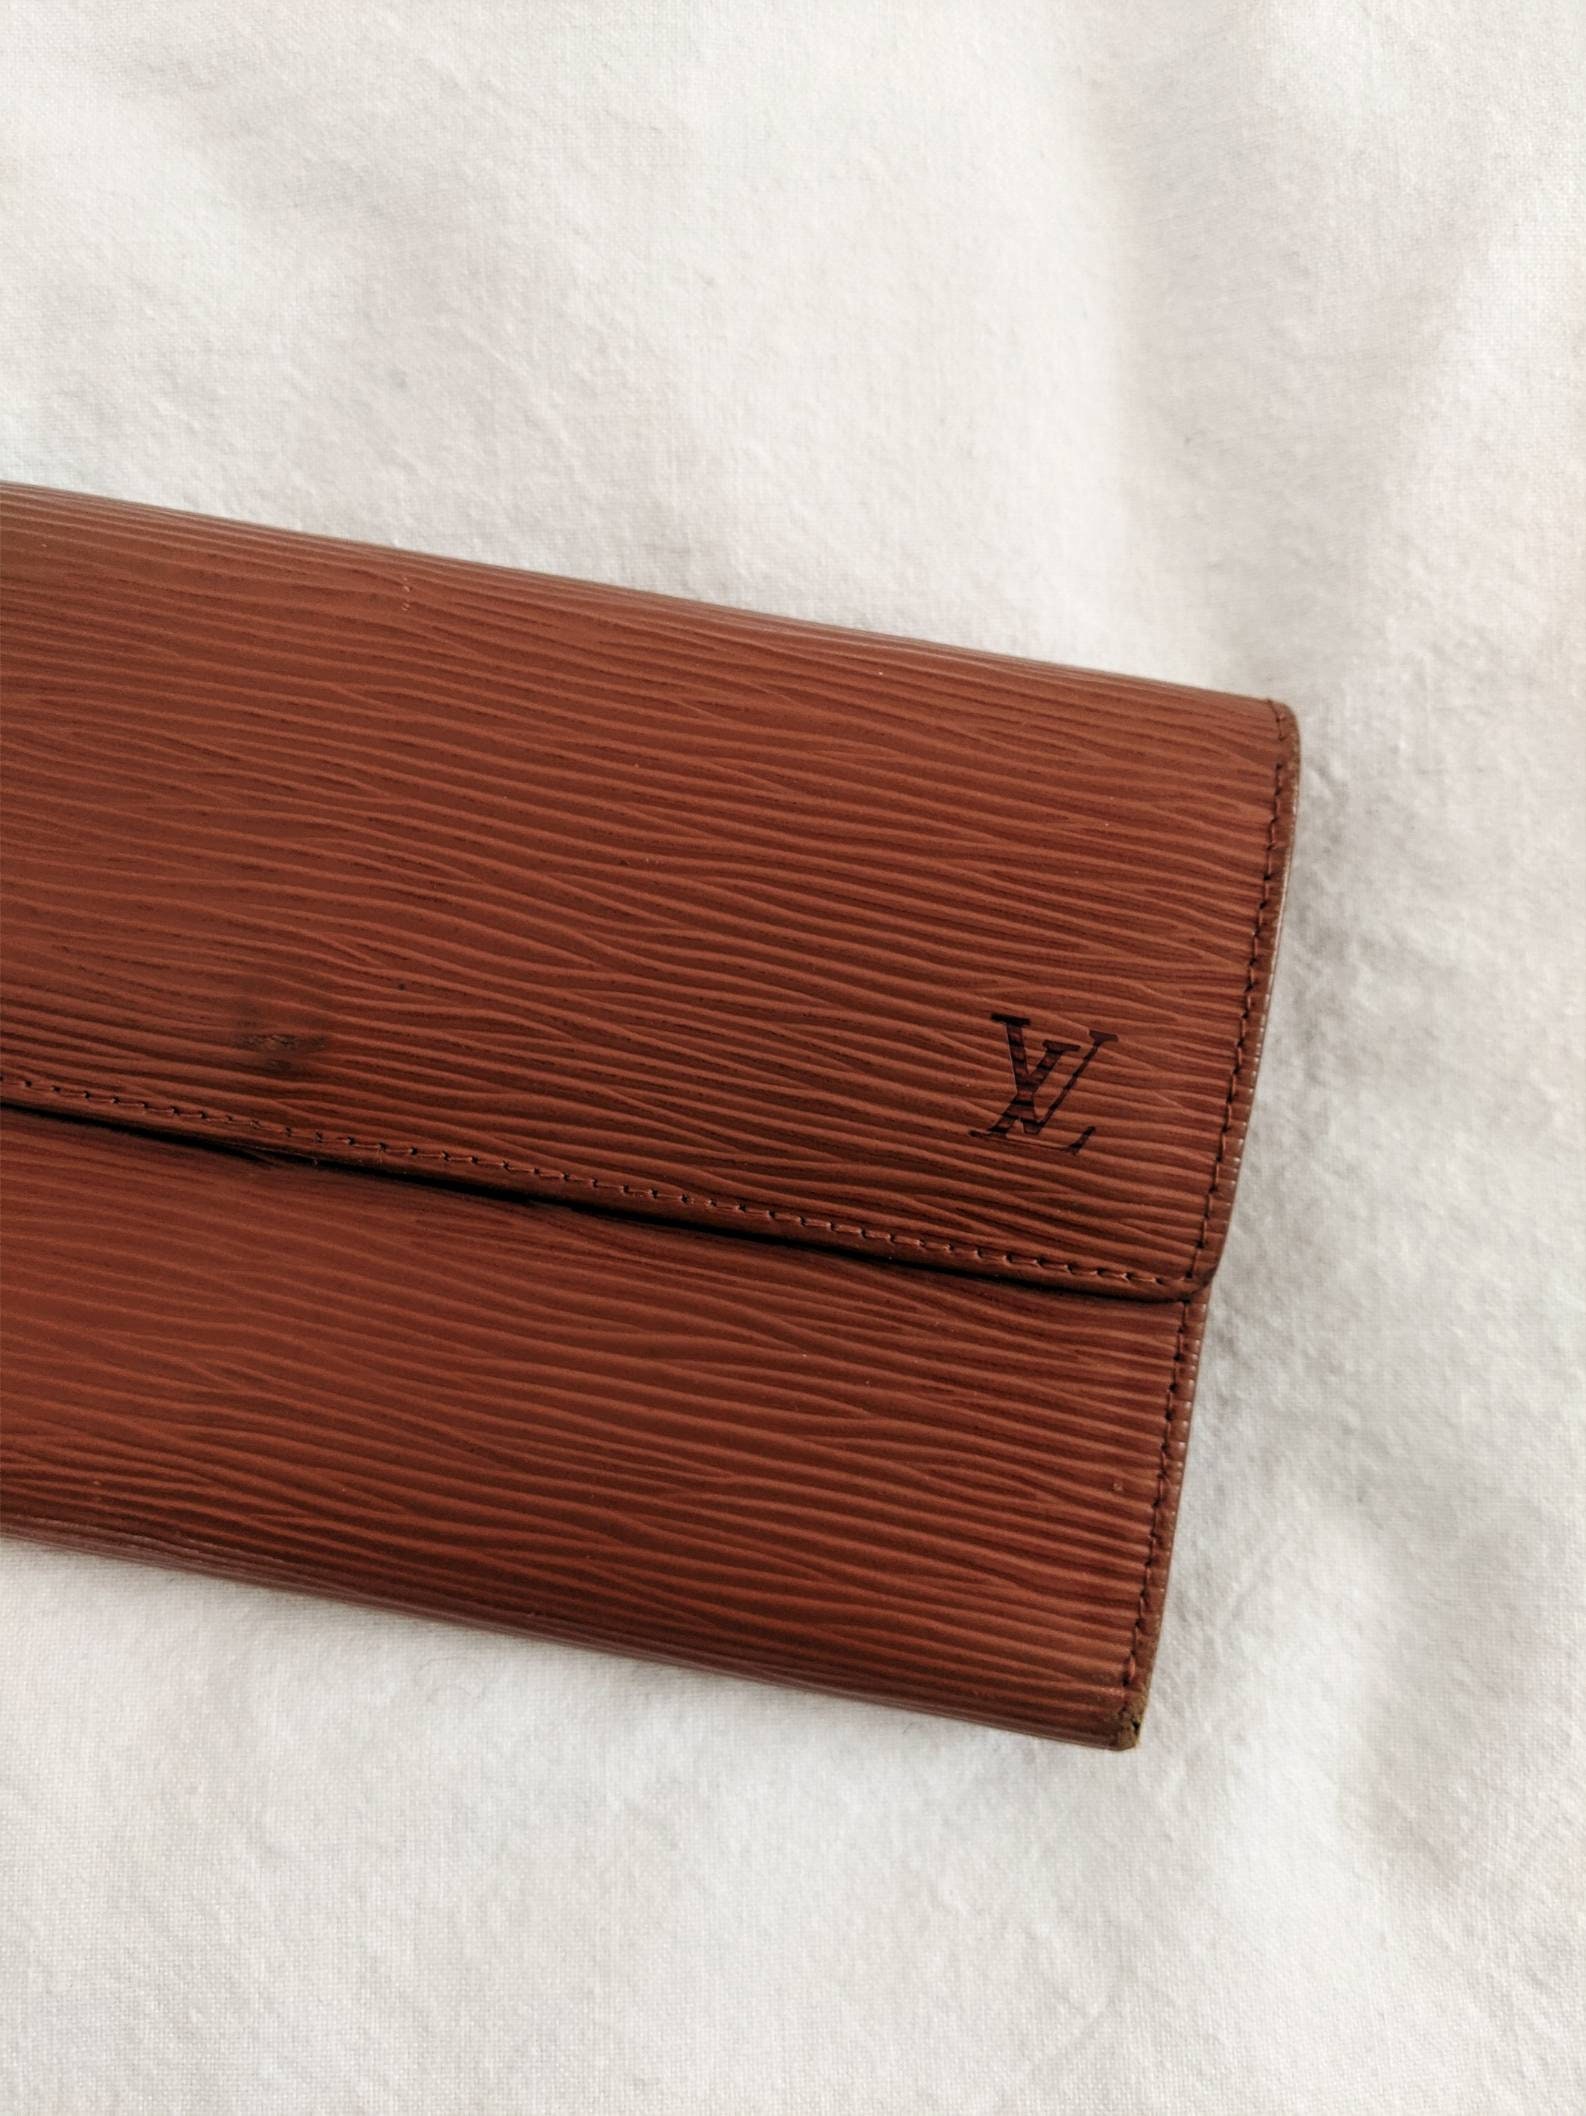 Vintage Wallet Louis Vuitton 